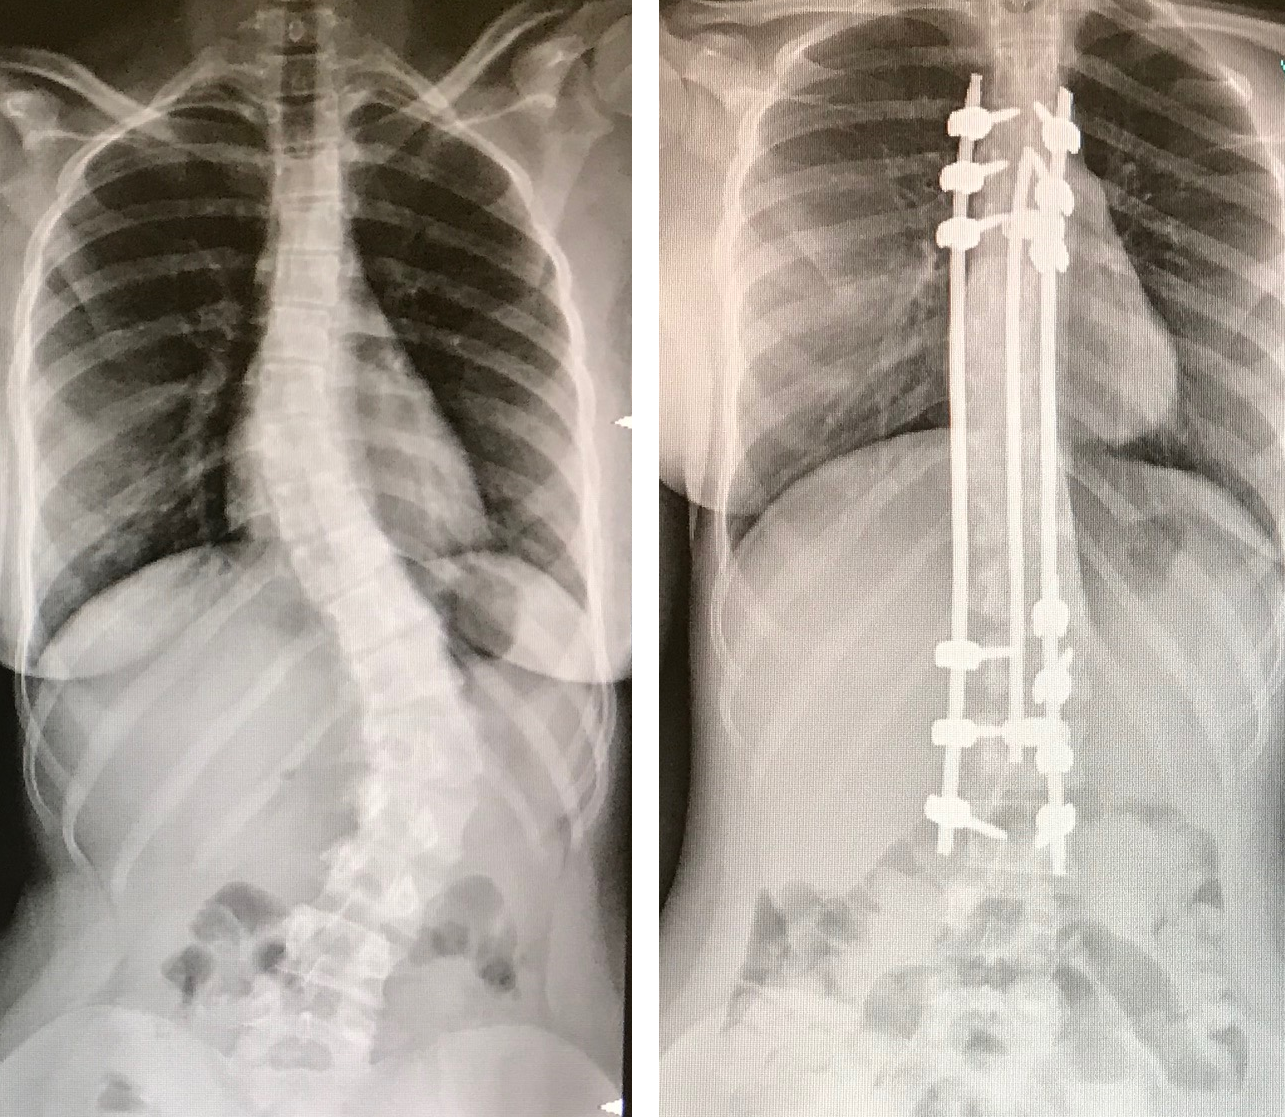 Trattamento della scoliosi con la tecnica innovativa descritta: immagine radiografica prima e dopo l'intervento